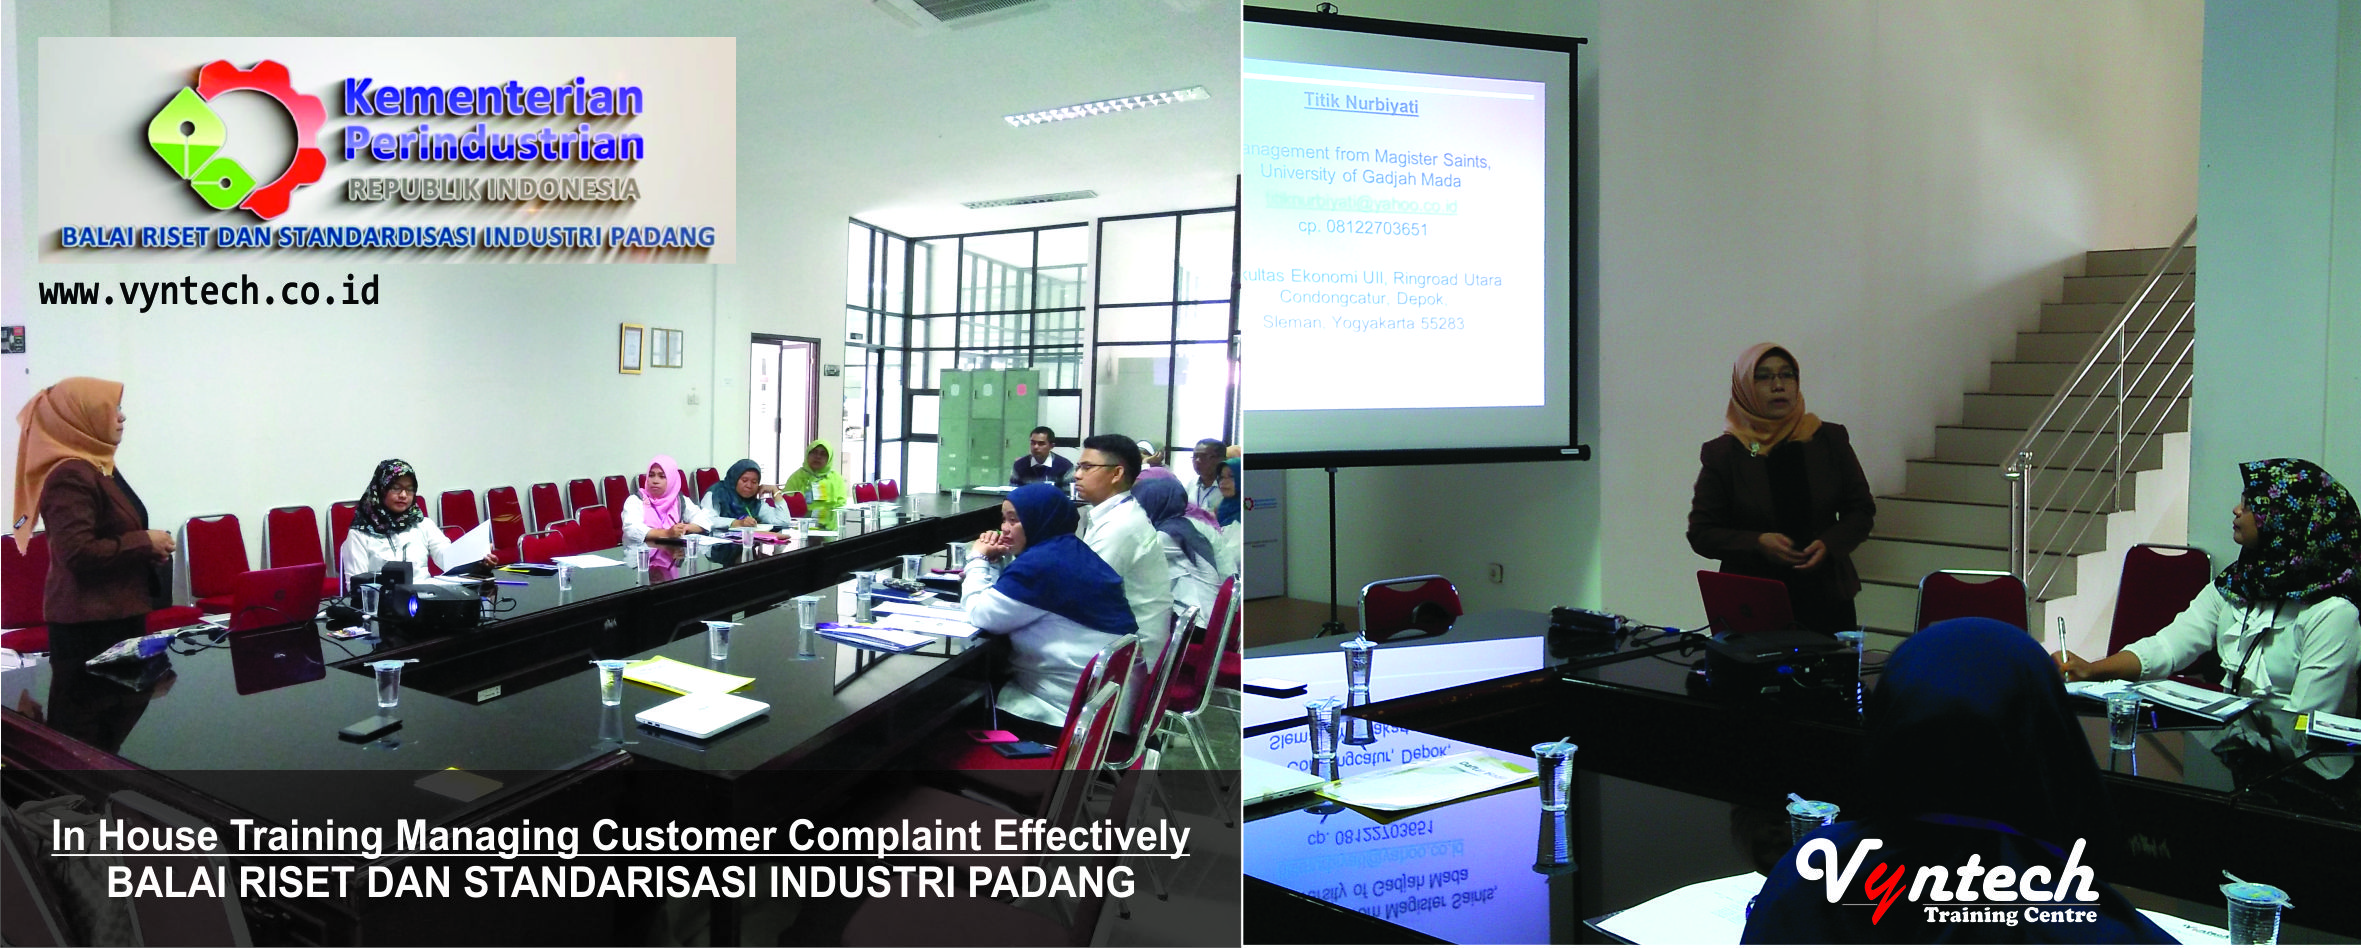 20171016 In House Training Managing Customer Complaint Effectively - Balai Riset dan Standardisasi Industri Padang, di Padang